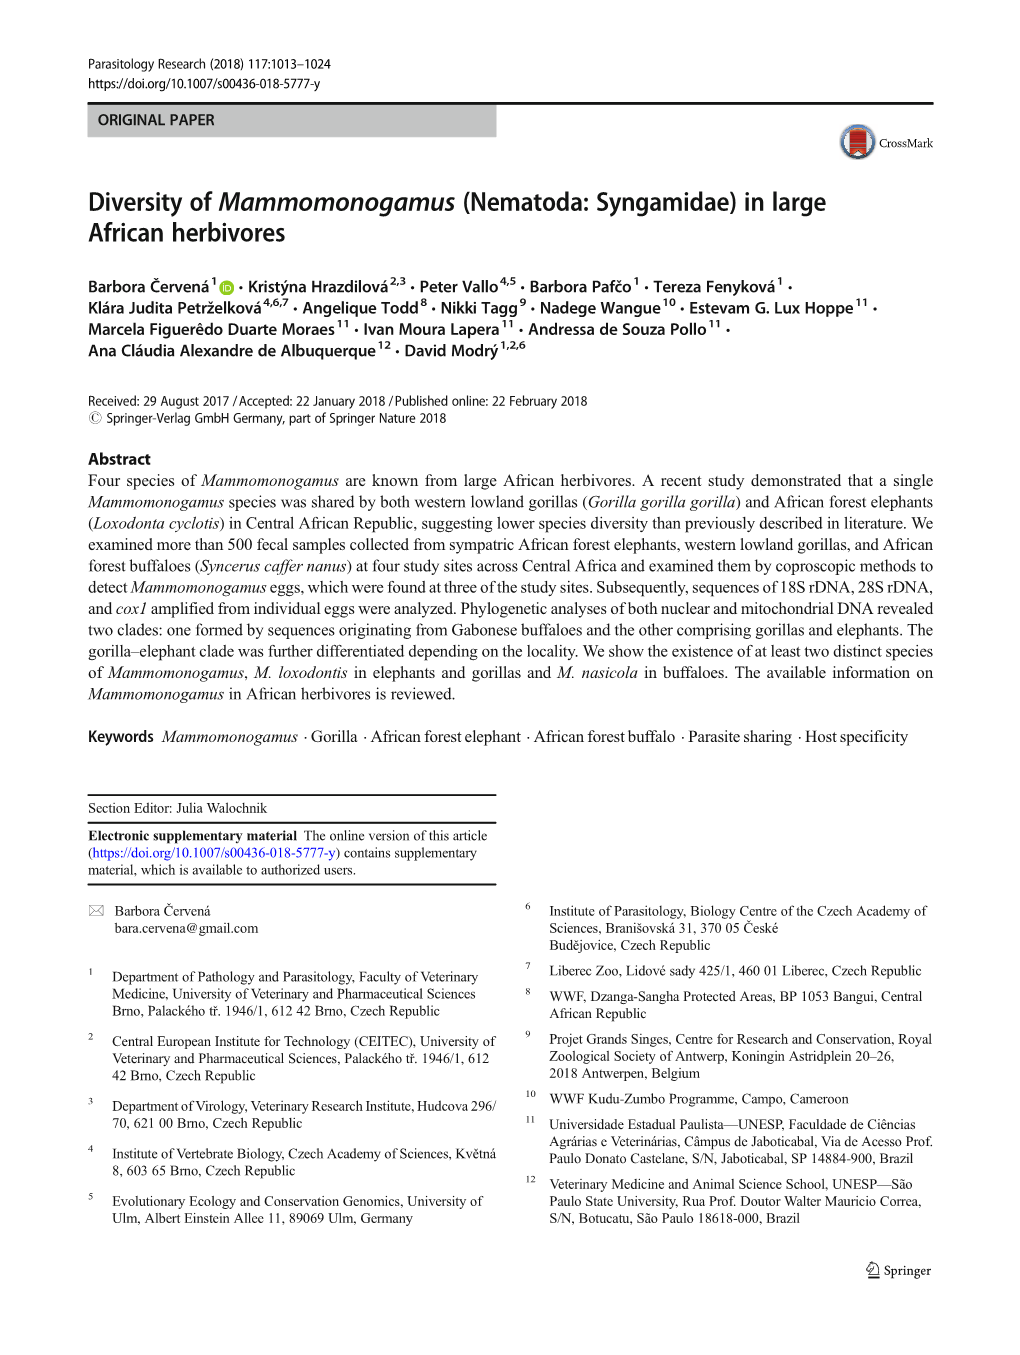 Diversity of Mammomonogamus (Nematoda: Syngamidae) in Large African Herbivores